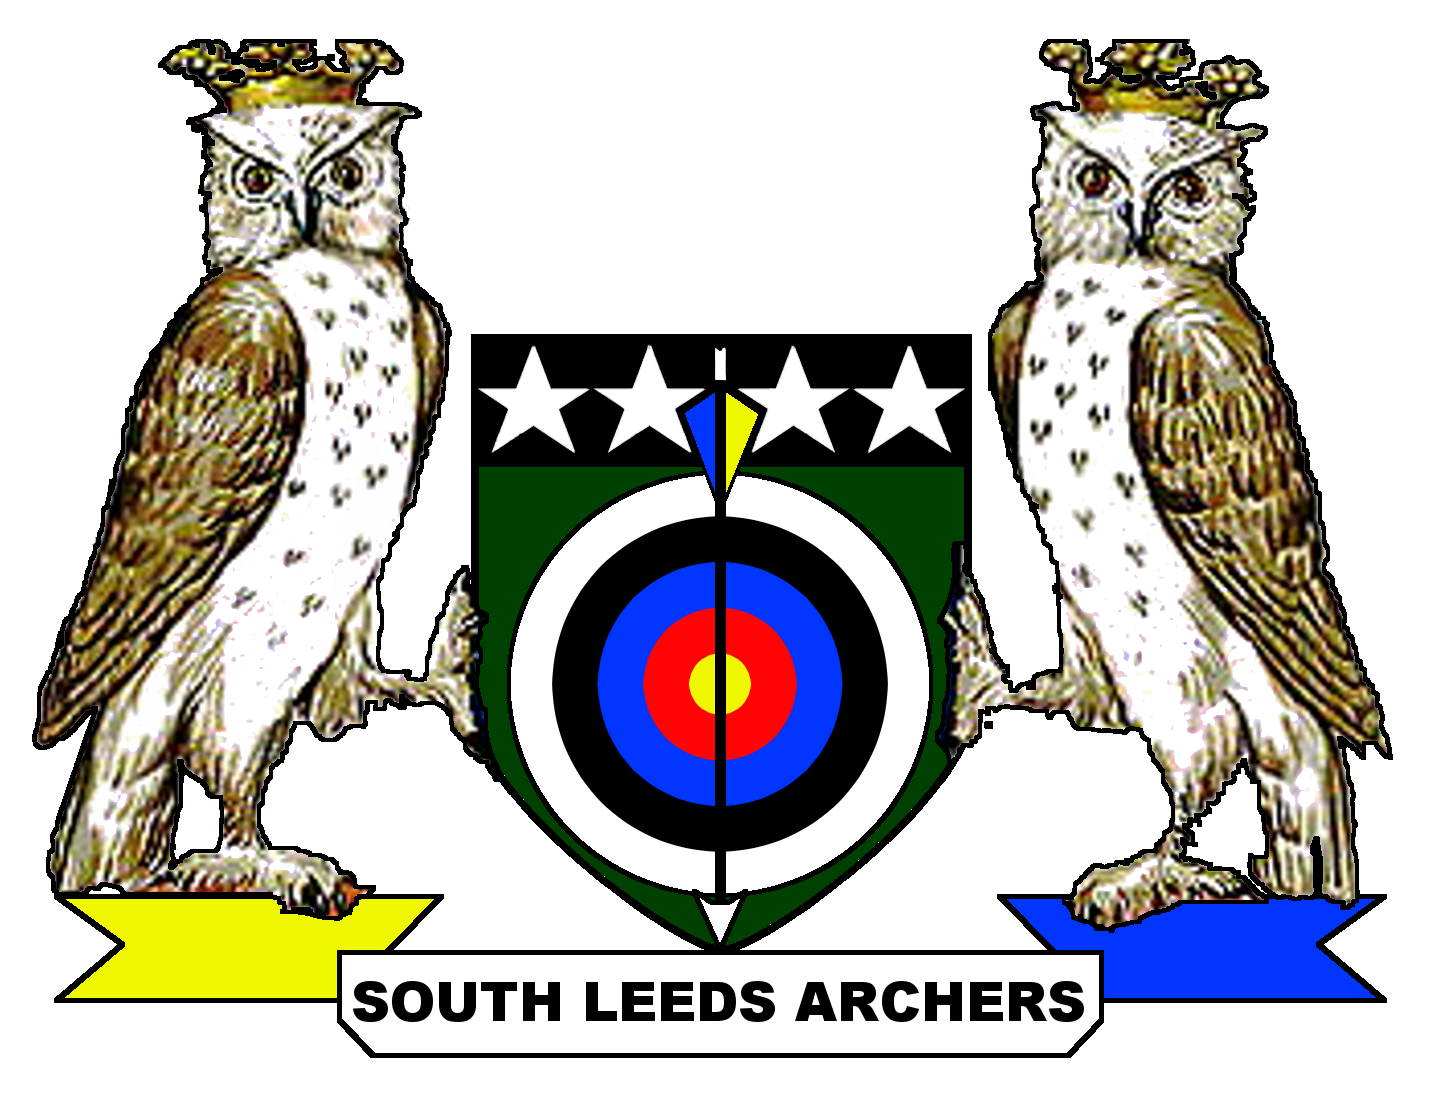 South Leeds Archers